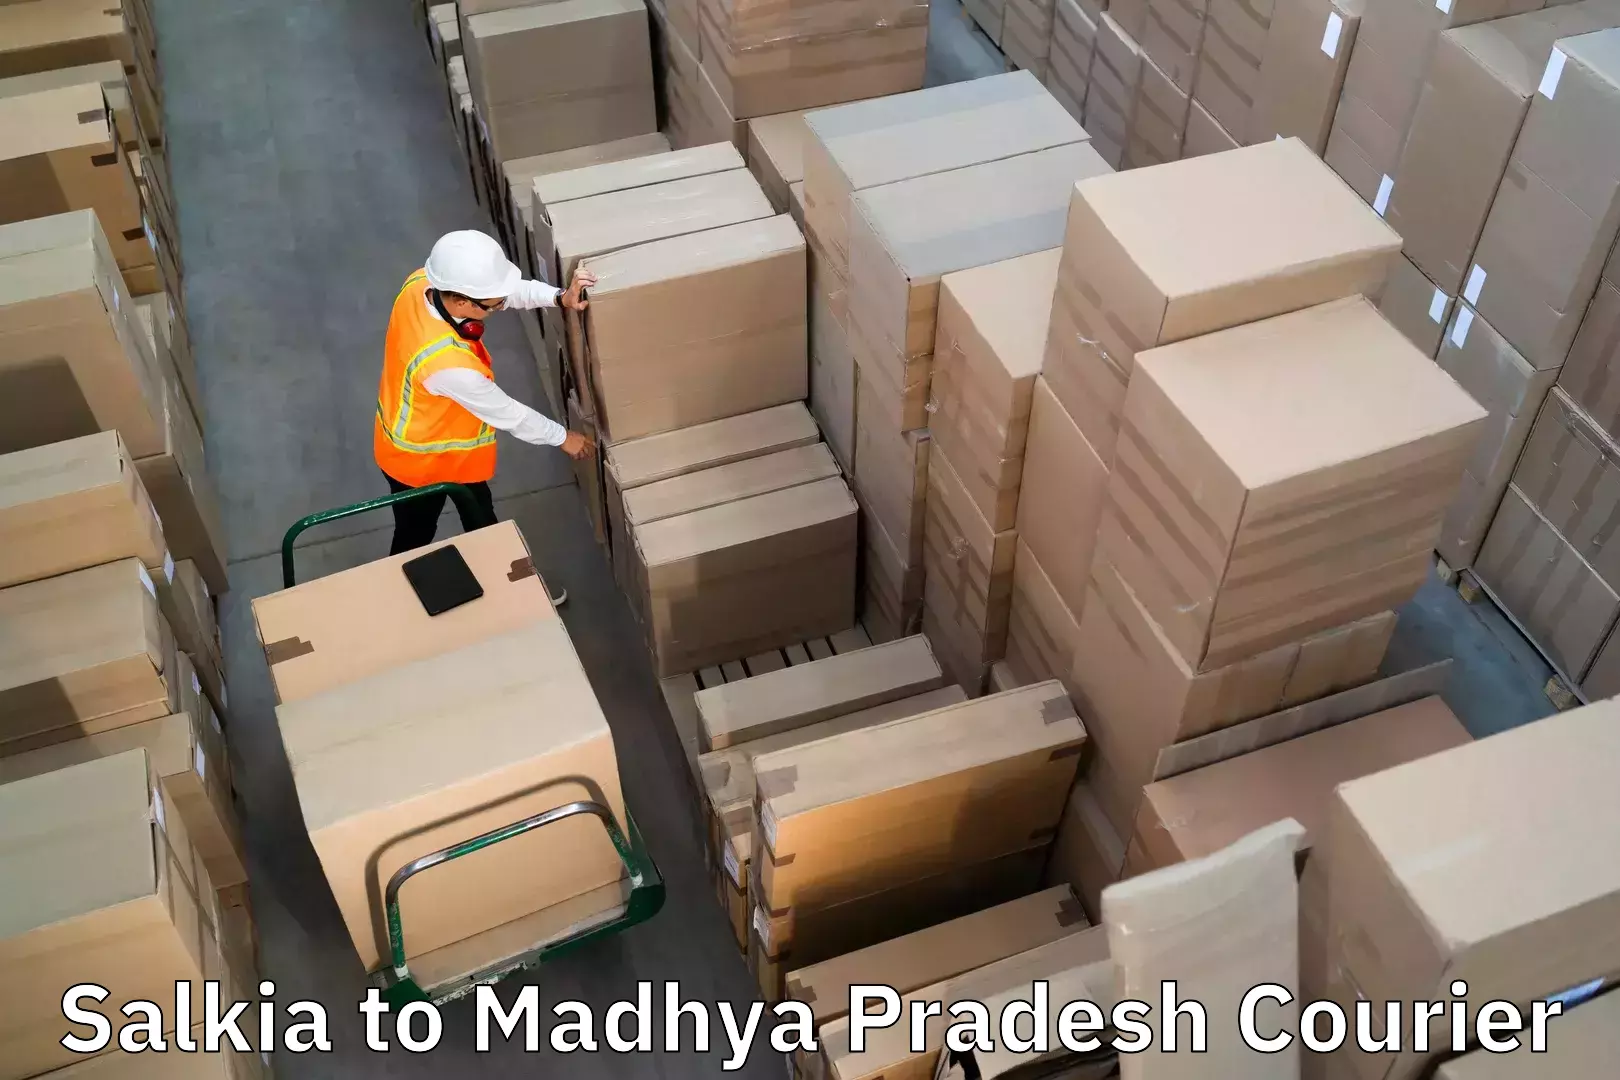 Luggage shipment specialists Salkia to Khandwa